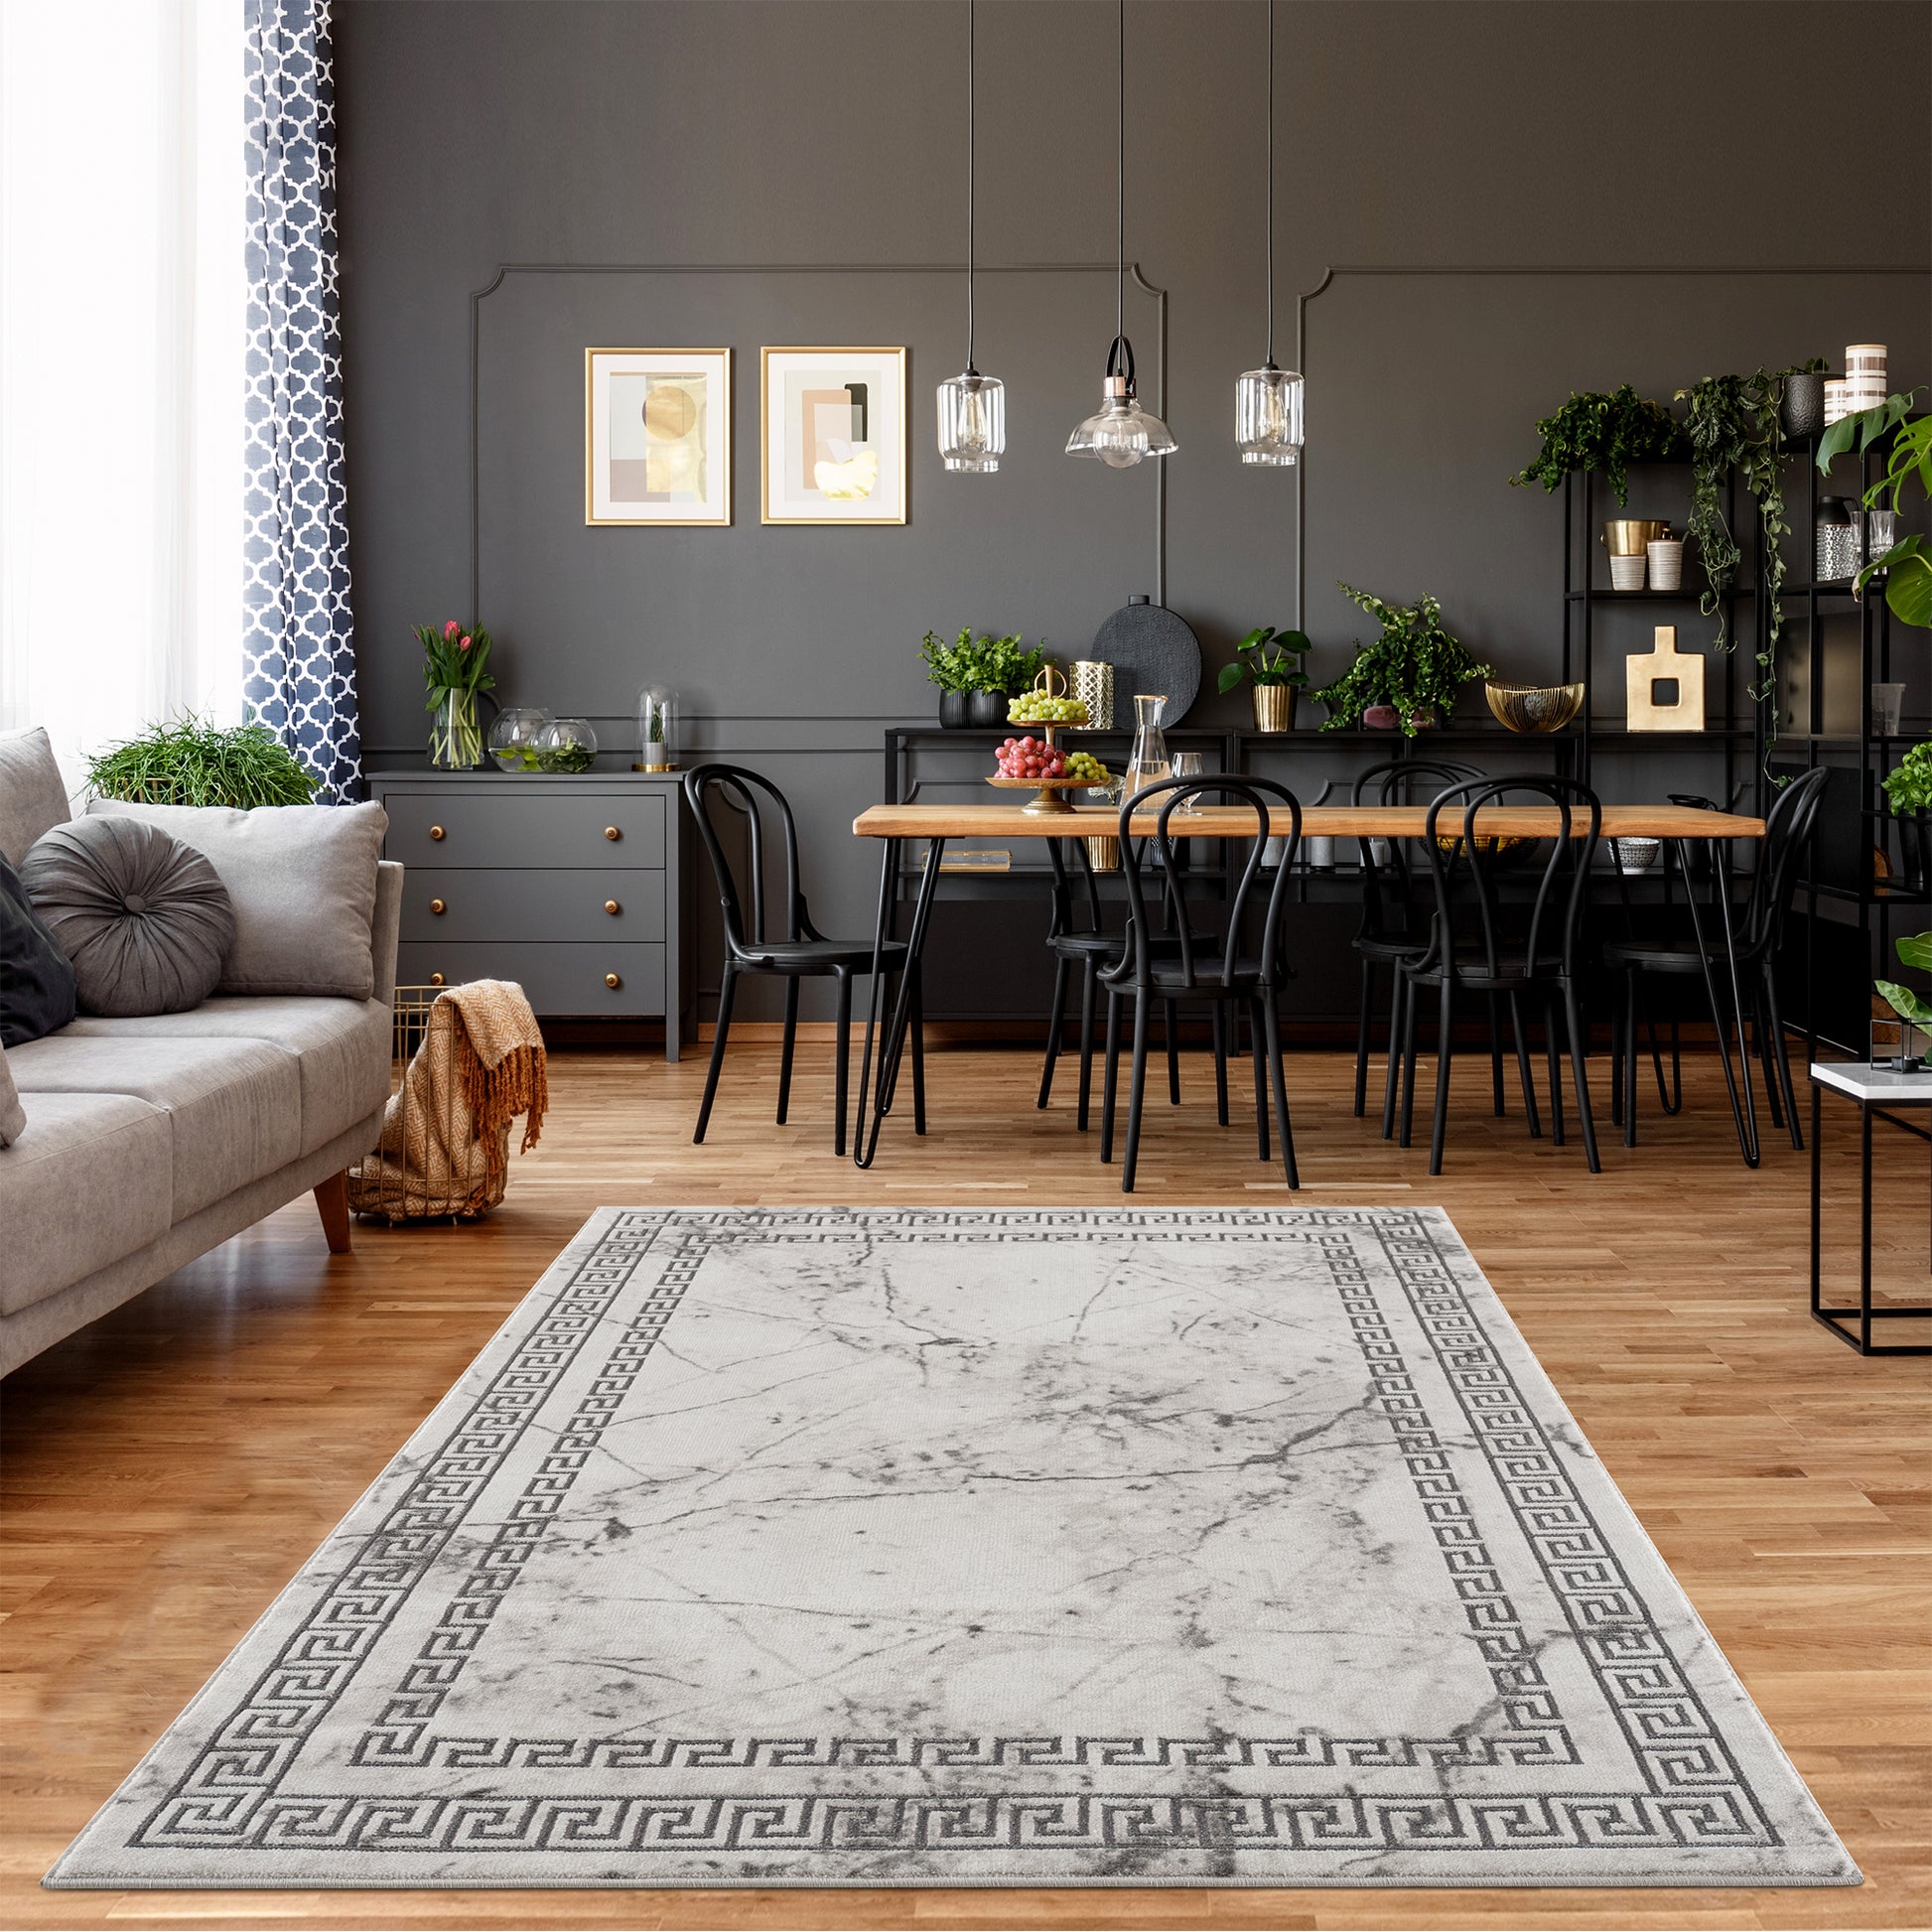 light dark grey beige modern meander greek pattern bordered area rug 9x12, 10x13 ft Large Big Carpet, Living Room, Beroom